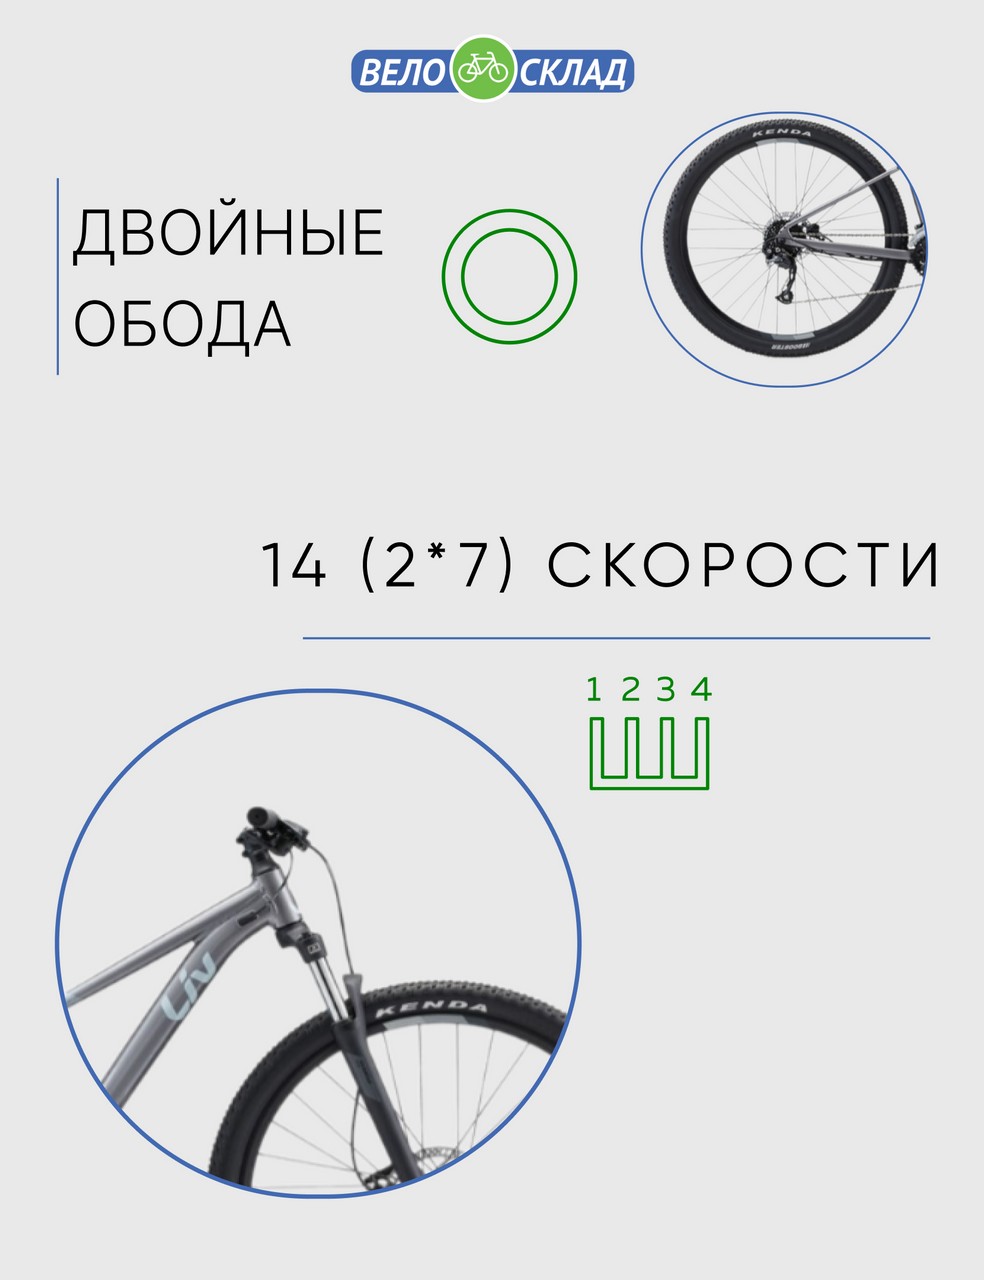 Женский велосипед Giant Tempt 2 27.5, год 2022, цвет Серебристый, ростовка 14.5